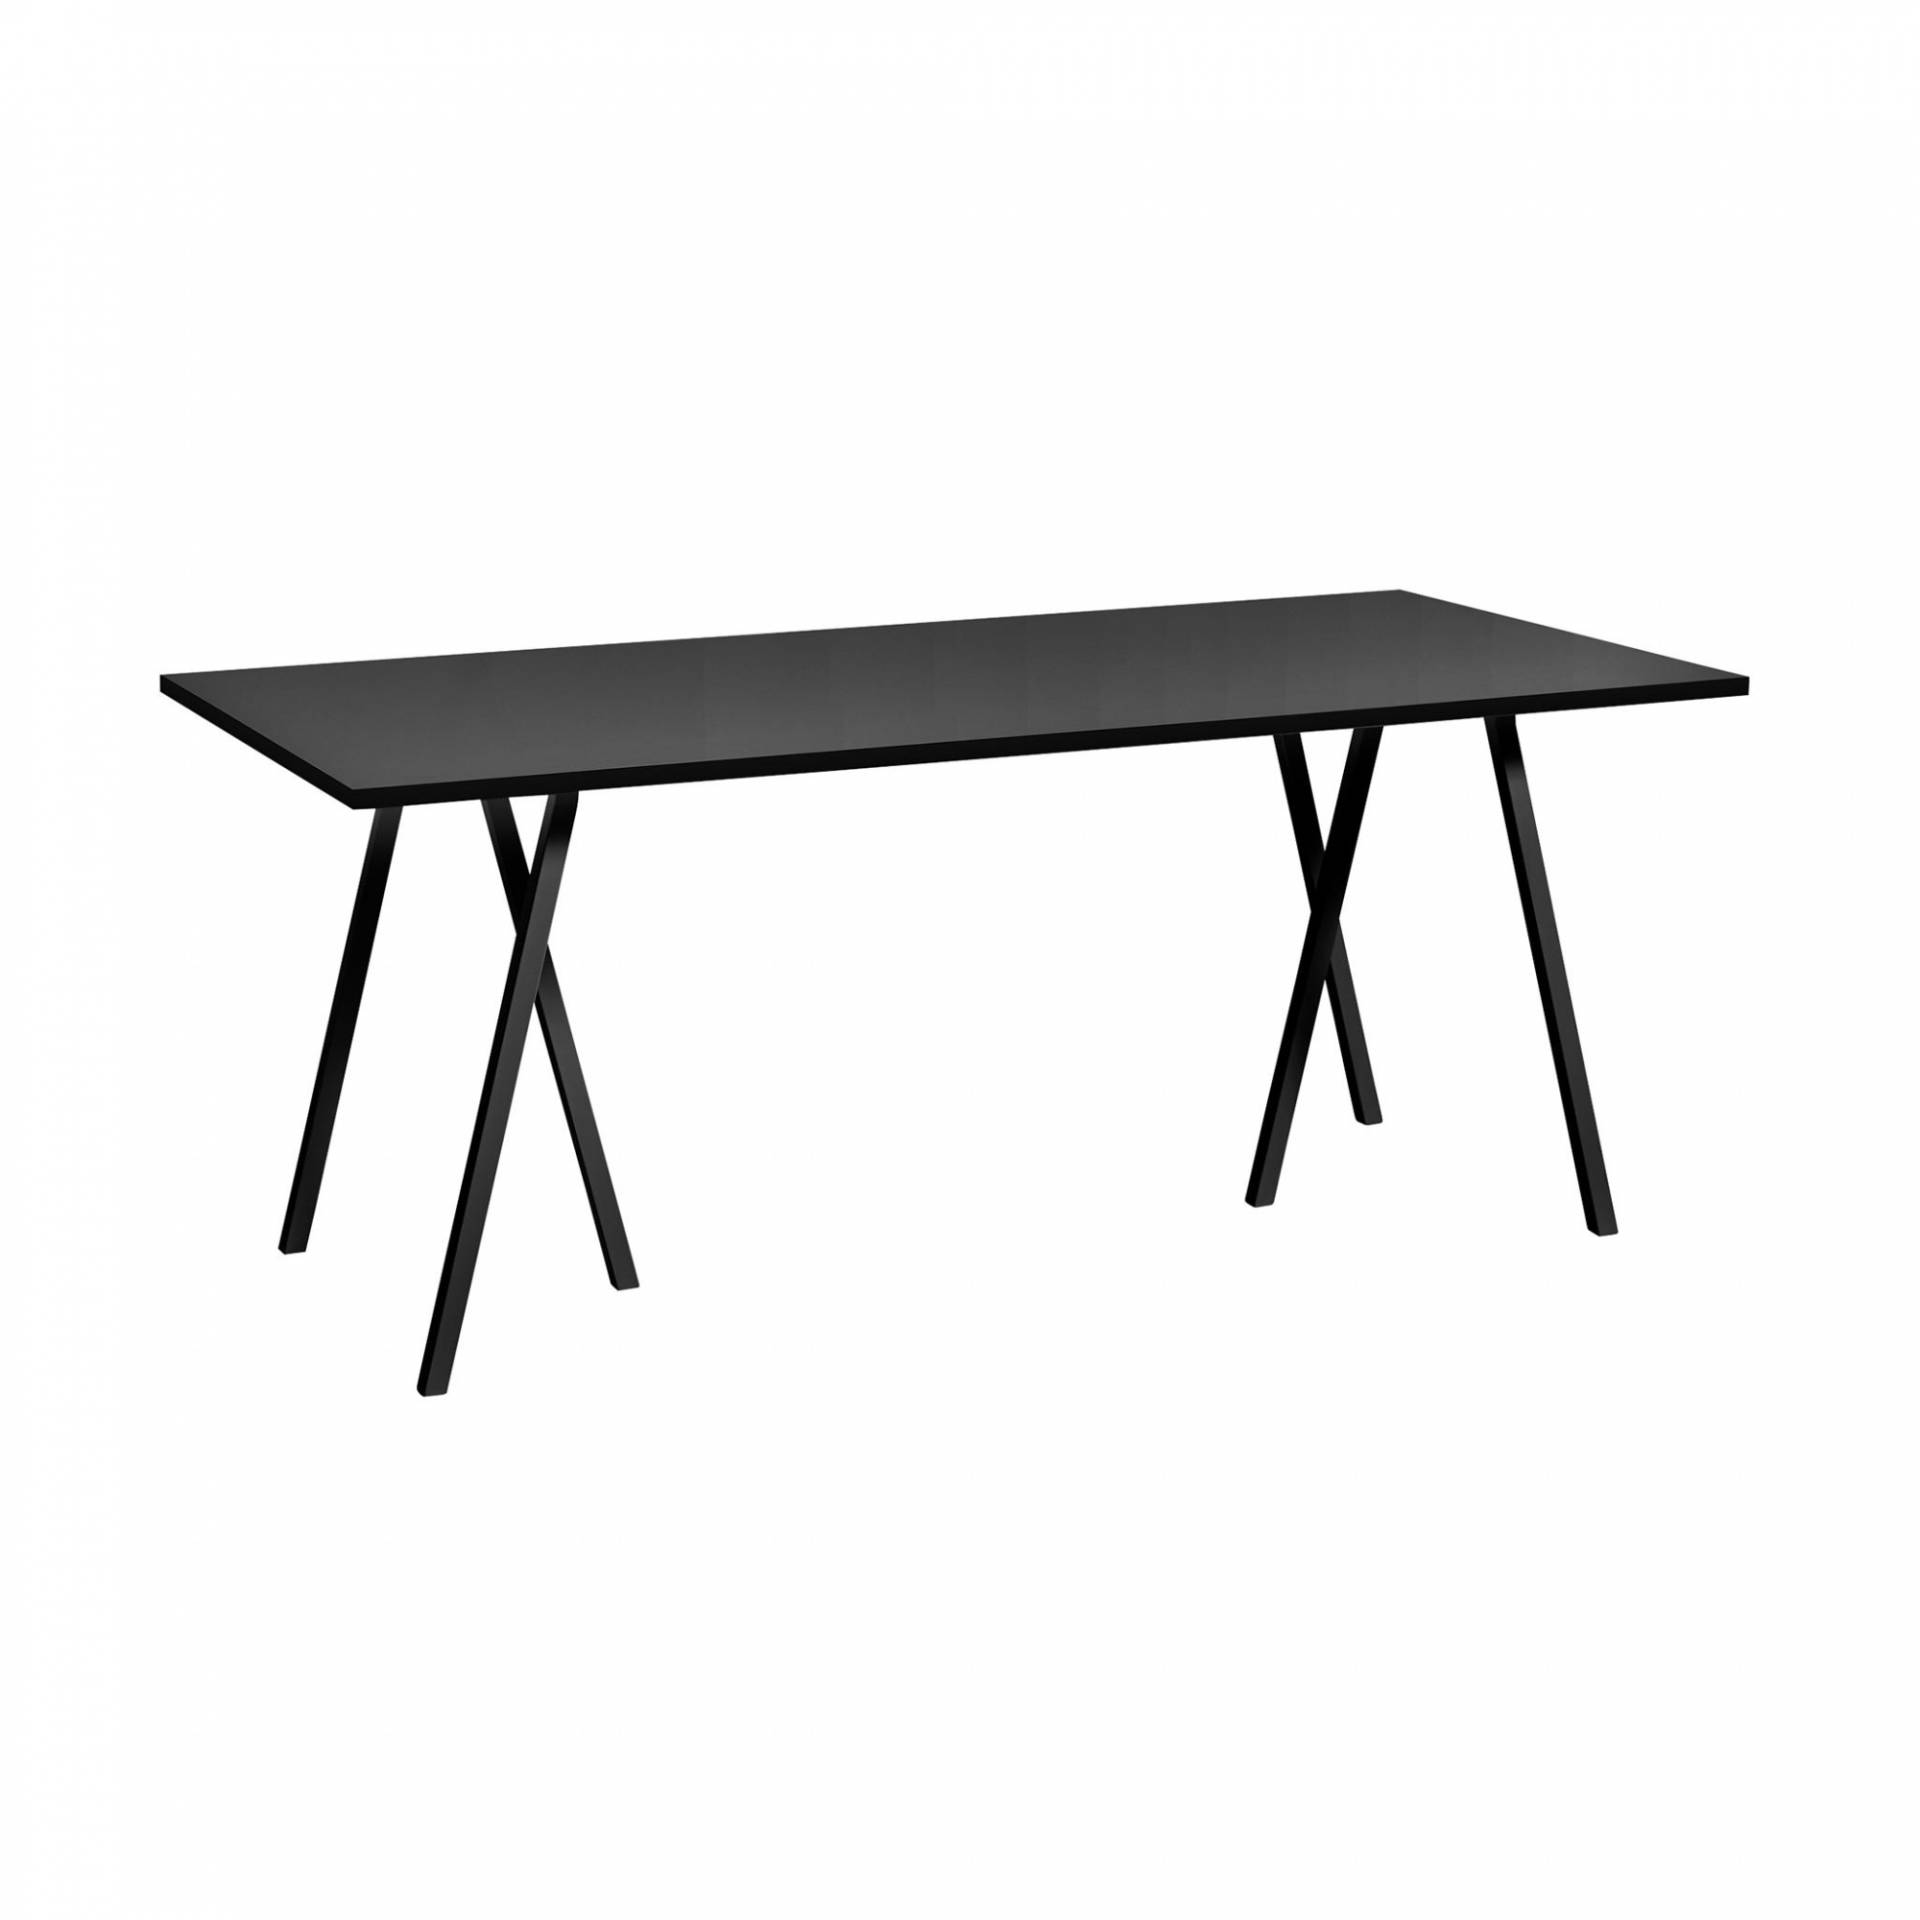 HAY - Loop Stand Tisch 180x87,5cm - schwarz /Tischplatte Linoleum/Tischkante Esche furnier schwarz/inkl. Tischverstärkung von HAY